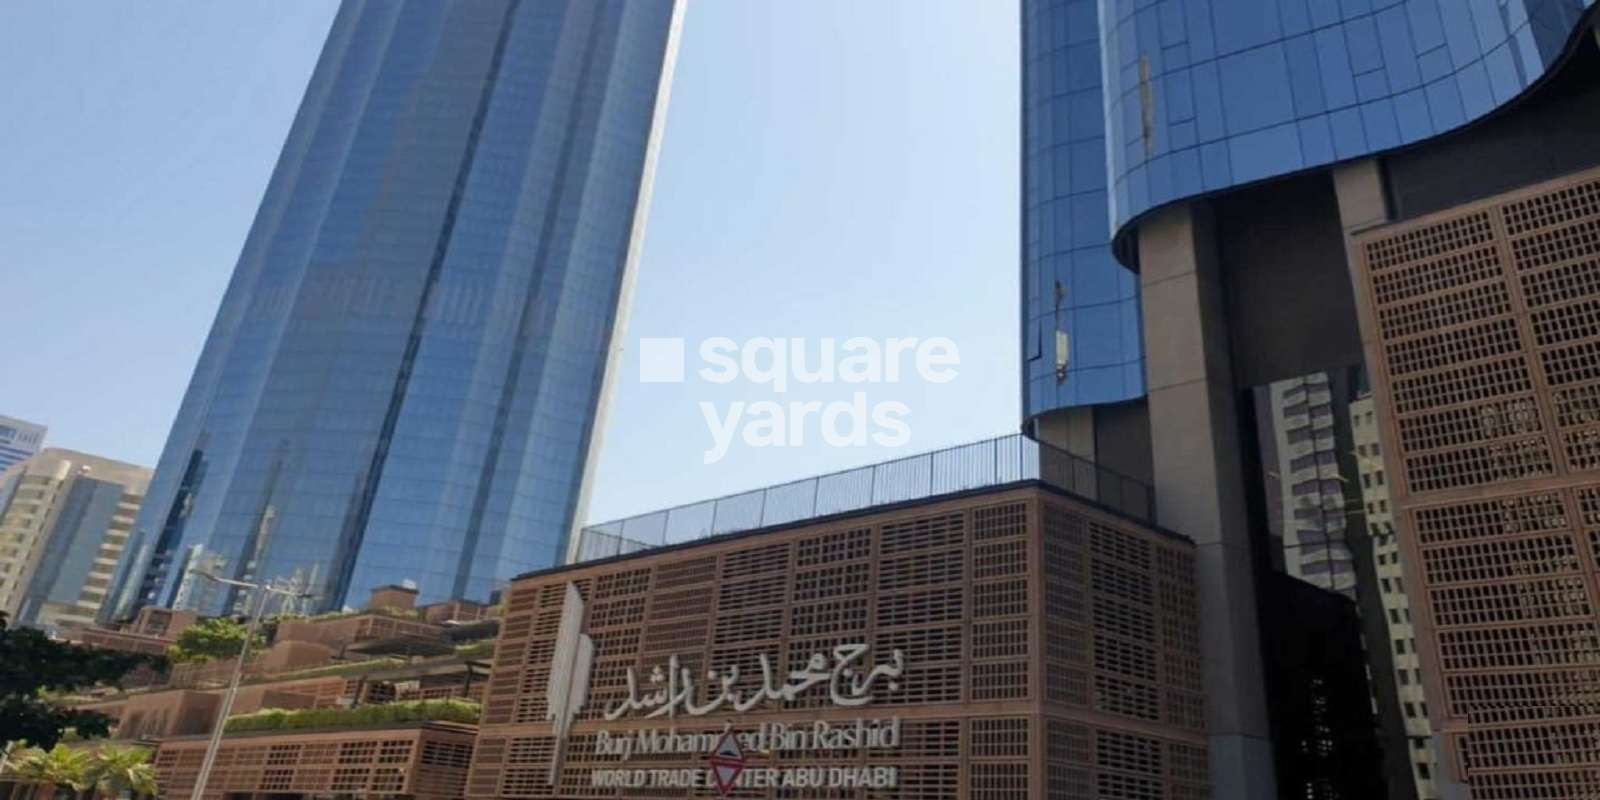 Eid Mohamed Rashid Building Cover Image